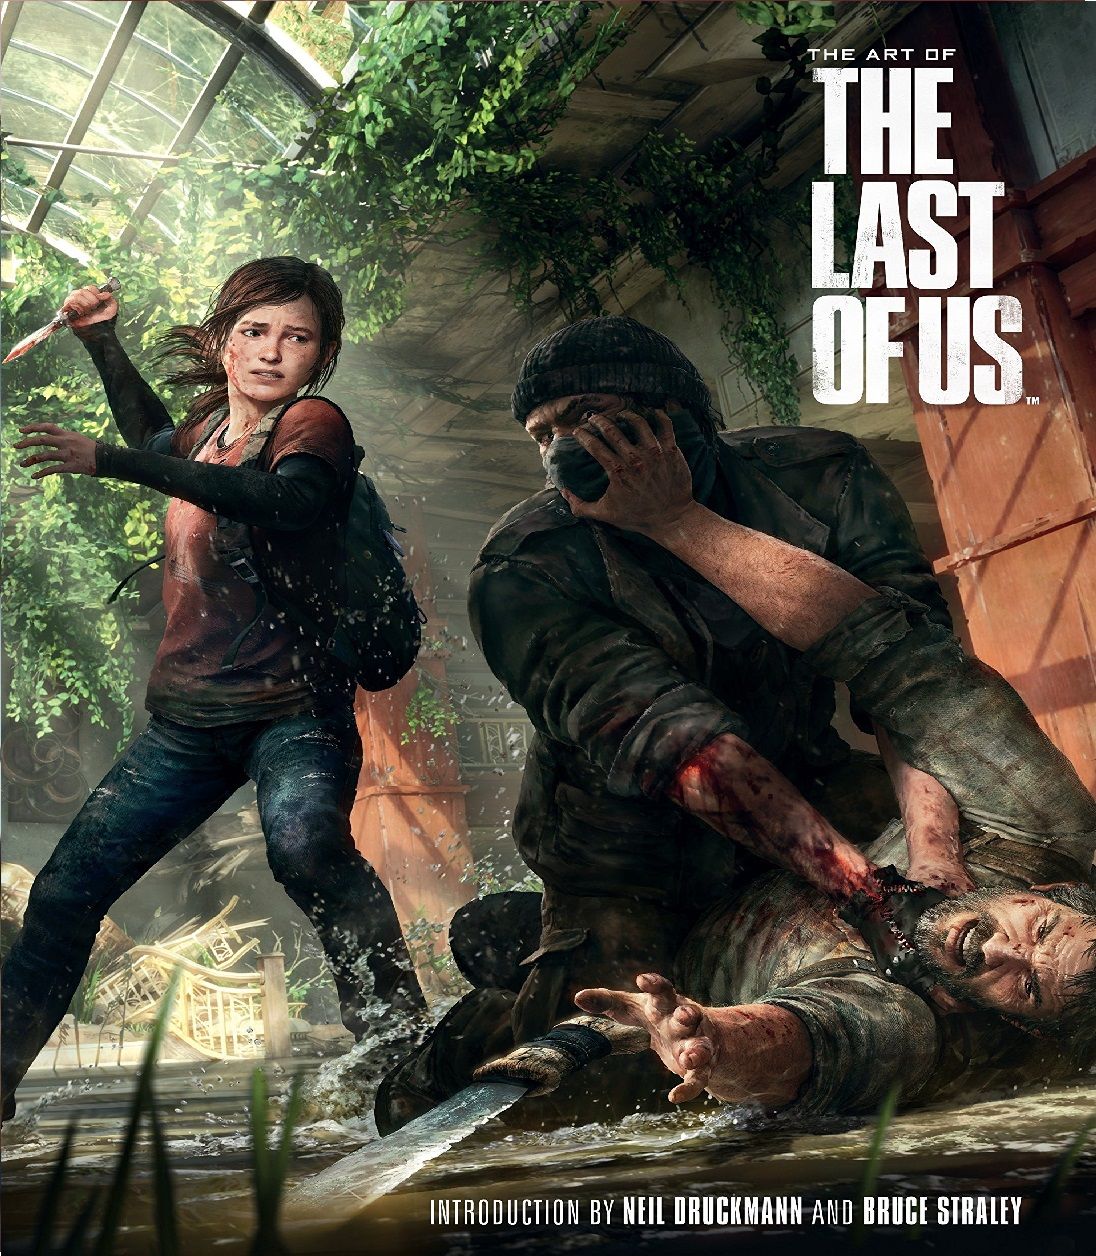 The Last of Us: Part 2 just hit 8/10 on IMDB : r/thelastofus